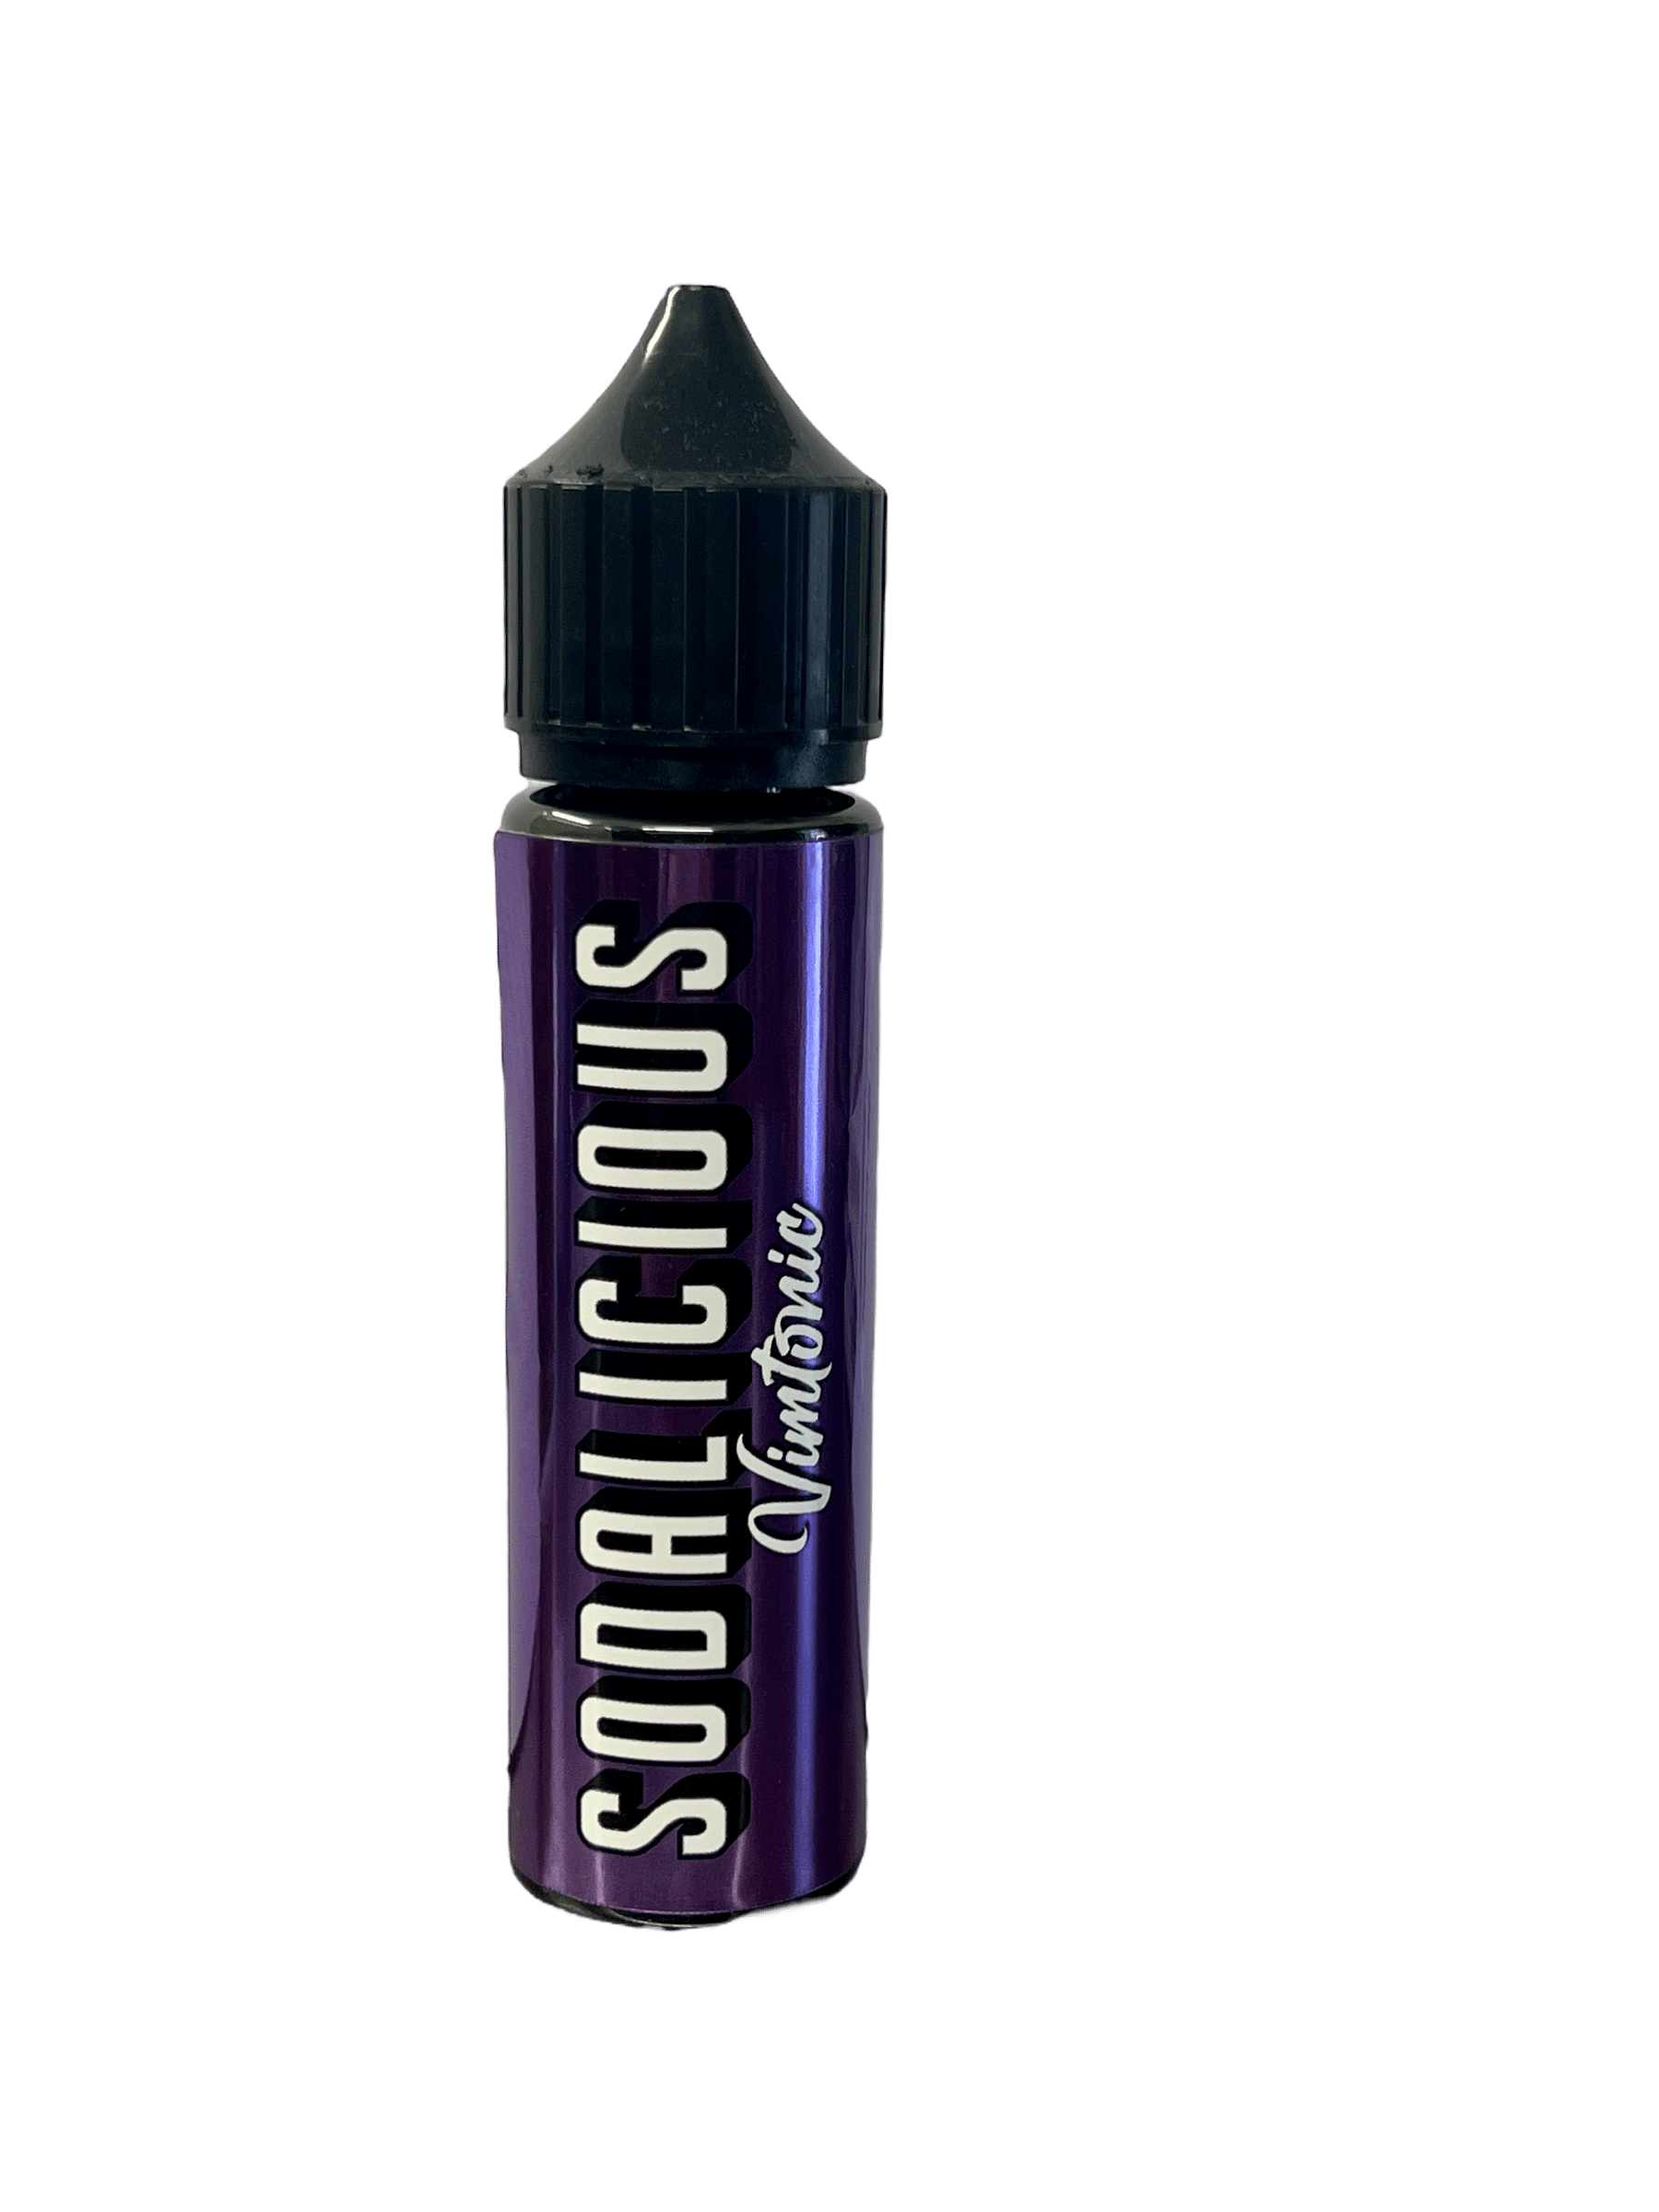 Sodalicious - Vimtonic 60ml Longfill E-Liquid - The British Vape Company